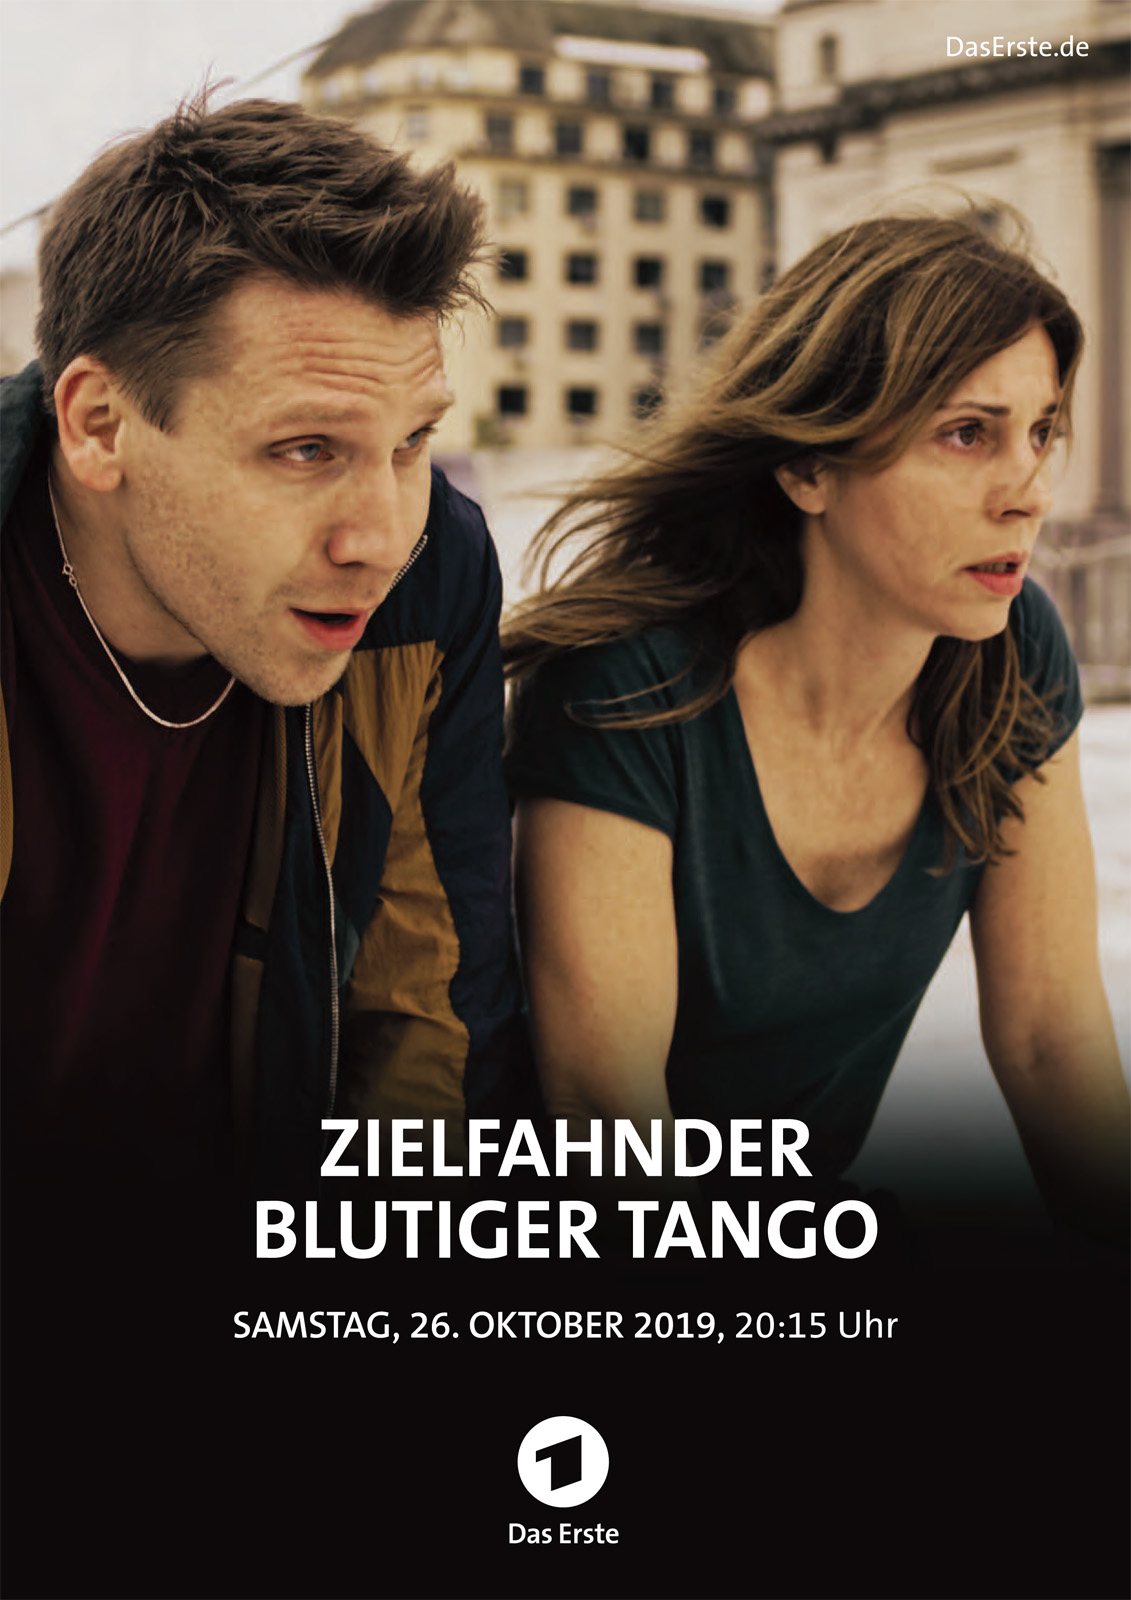 Zielfahnder Blutiger Tango Film 2019 Filmstarts De